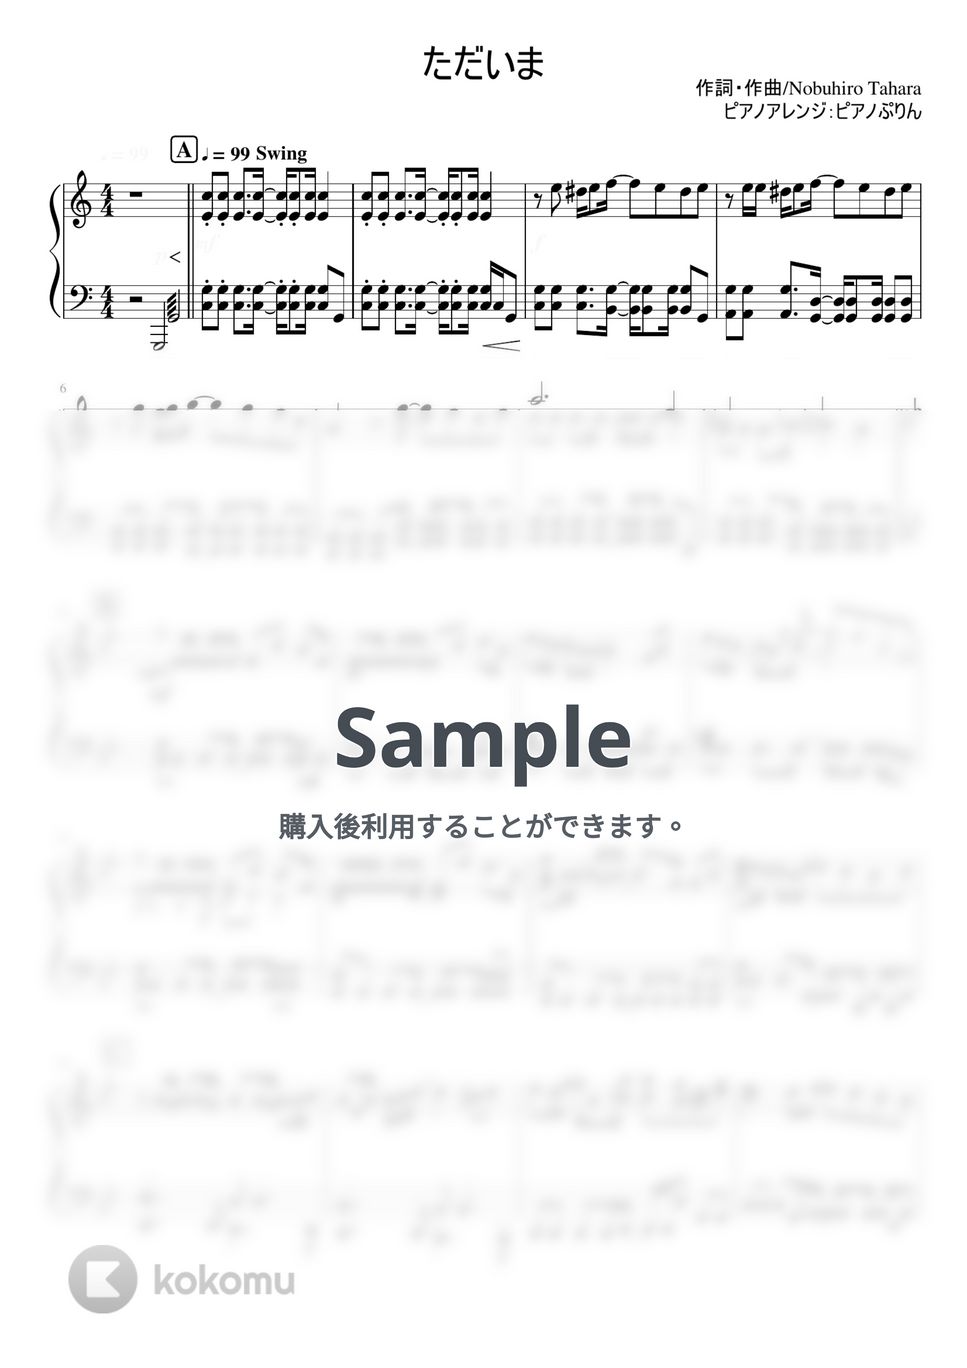 なにわ男子 - ただいま (6th Single「I Wish」/初回限定盤１収録曲) by ピアノぷりん